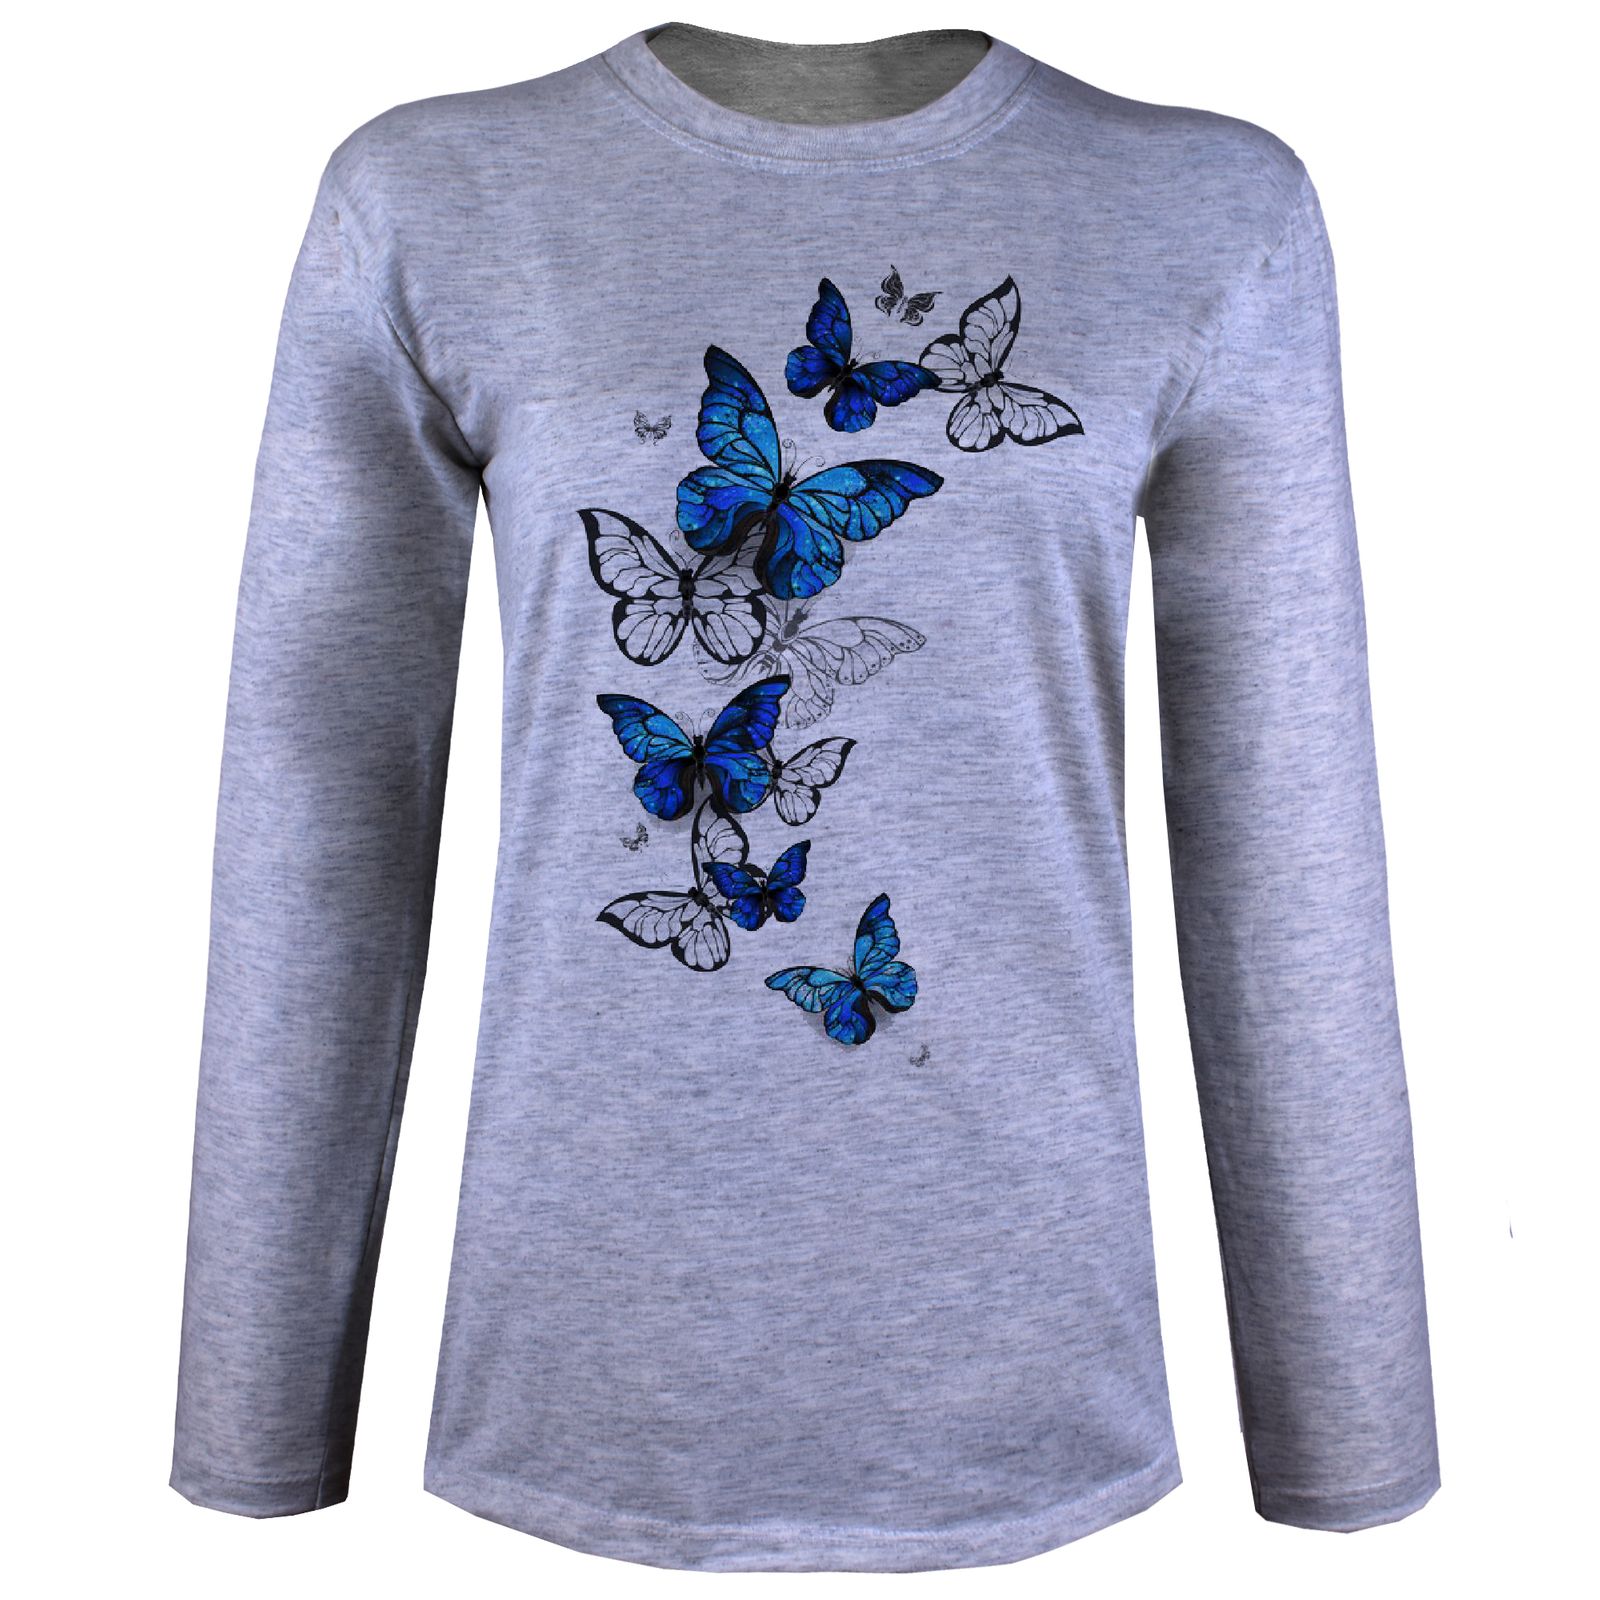 تی شرت آستین بلند زنانه مدل پروانه آبی W30 -  - 3